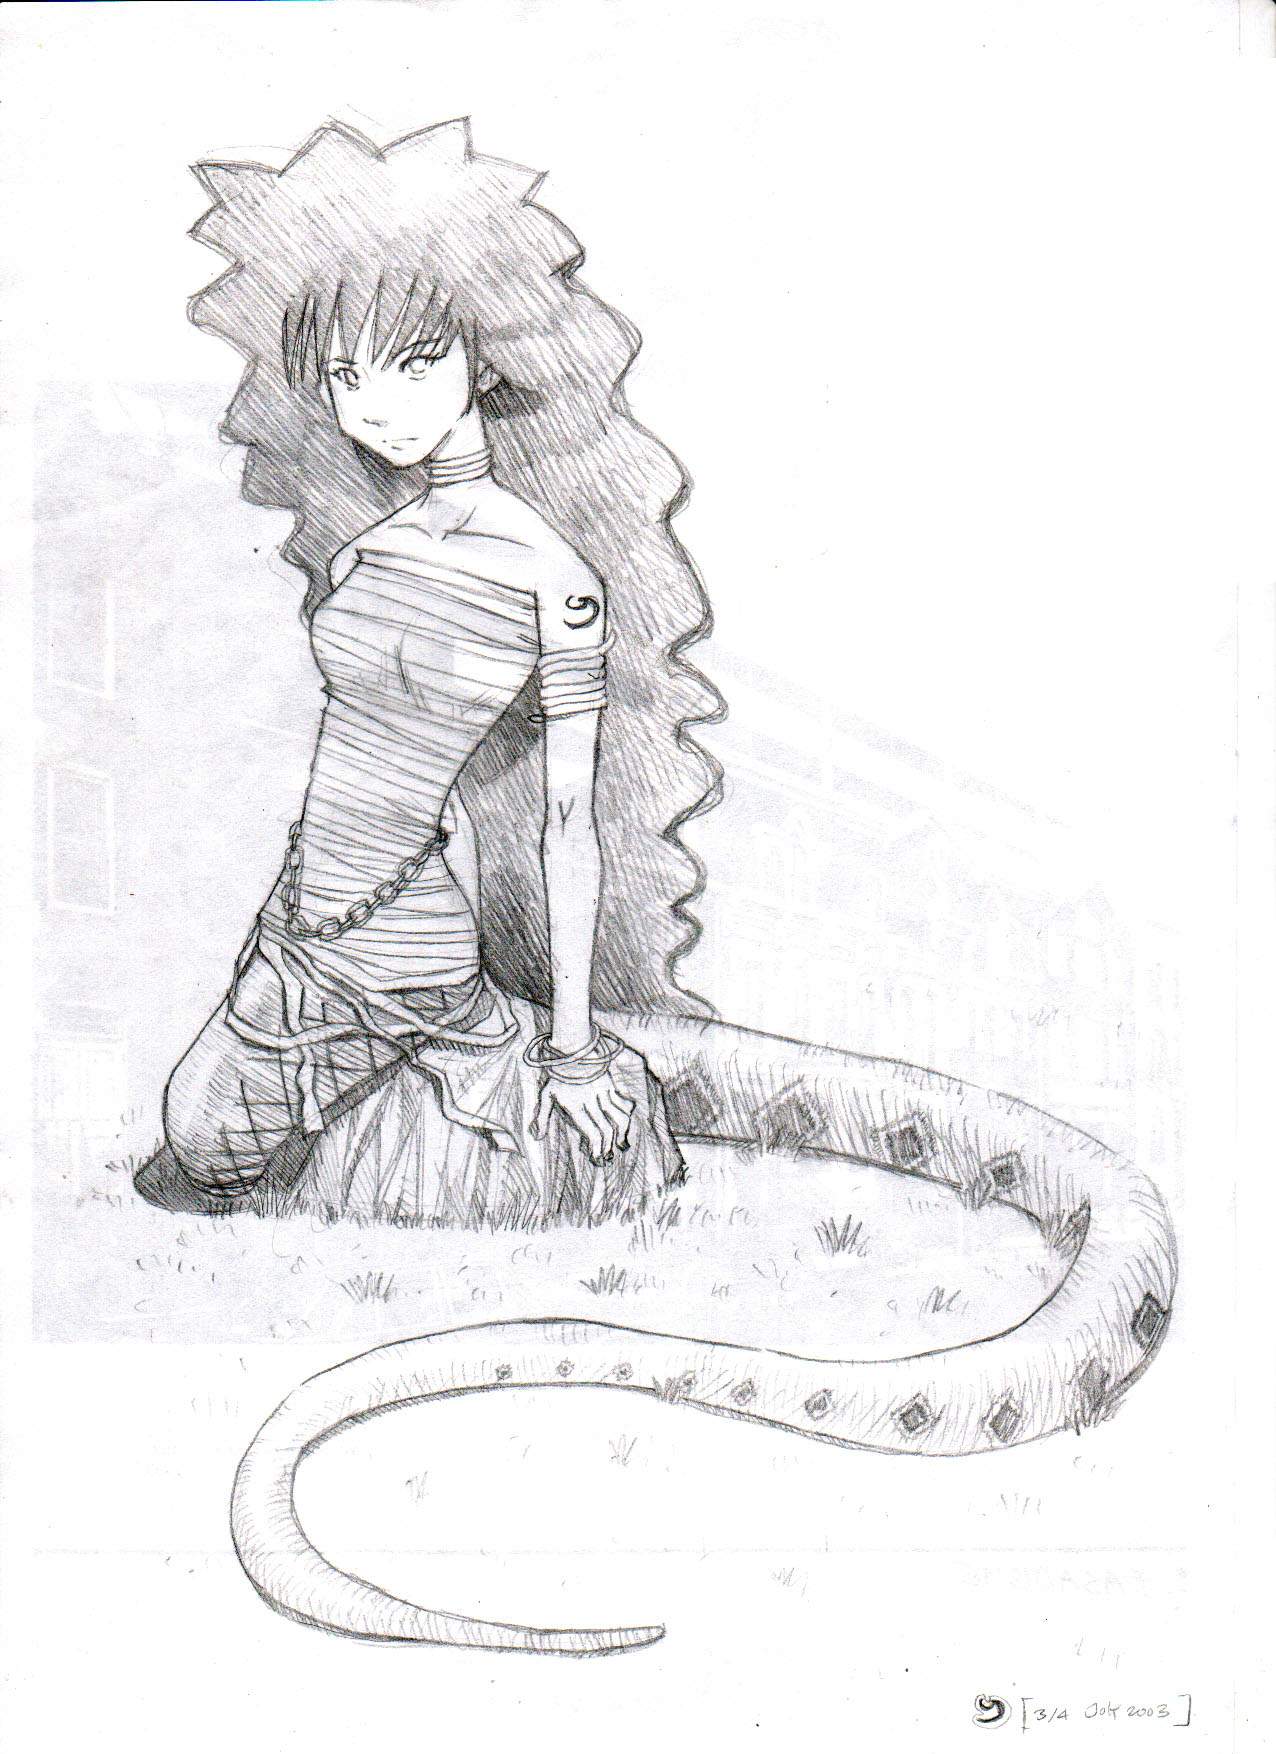 Snake by J